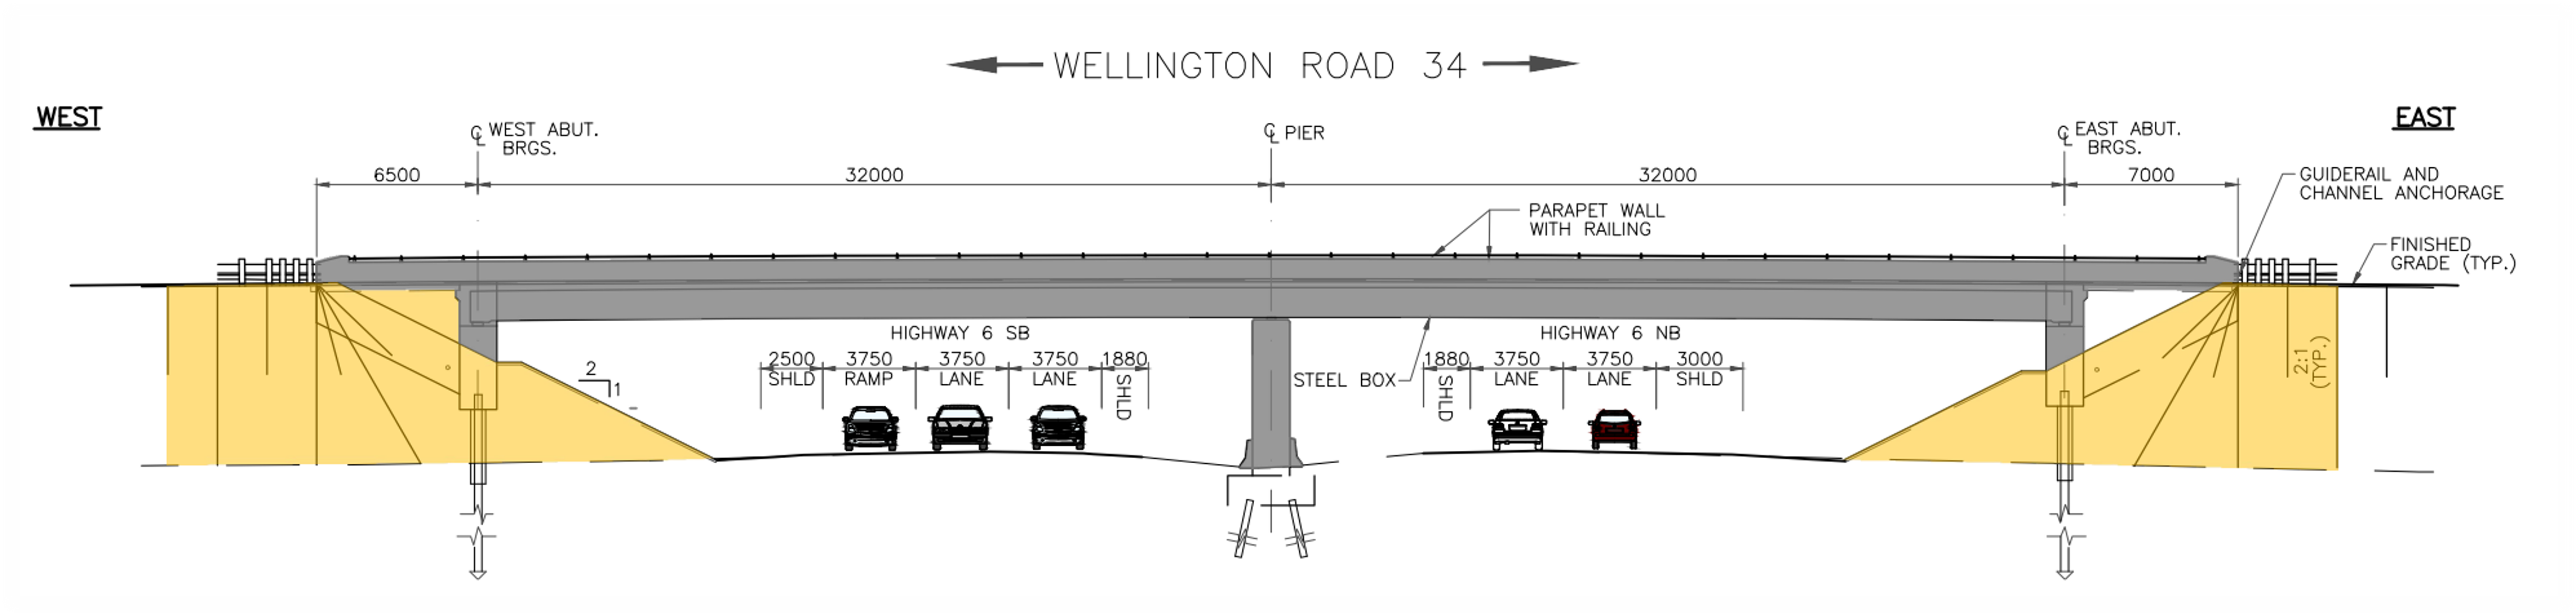 General arrangement engineering design drawing of the Wellington Road 34 Underpass